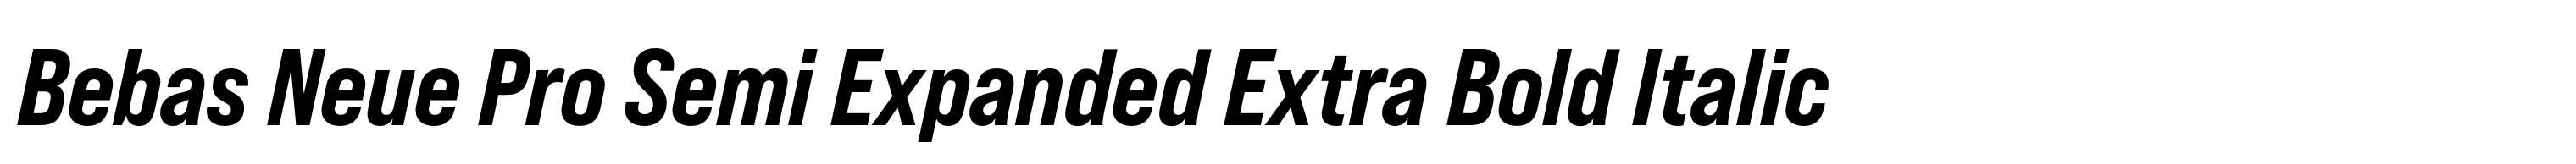 Bebas Neue Pro Semi Expanded Extra Bold Italic